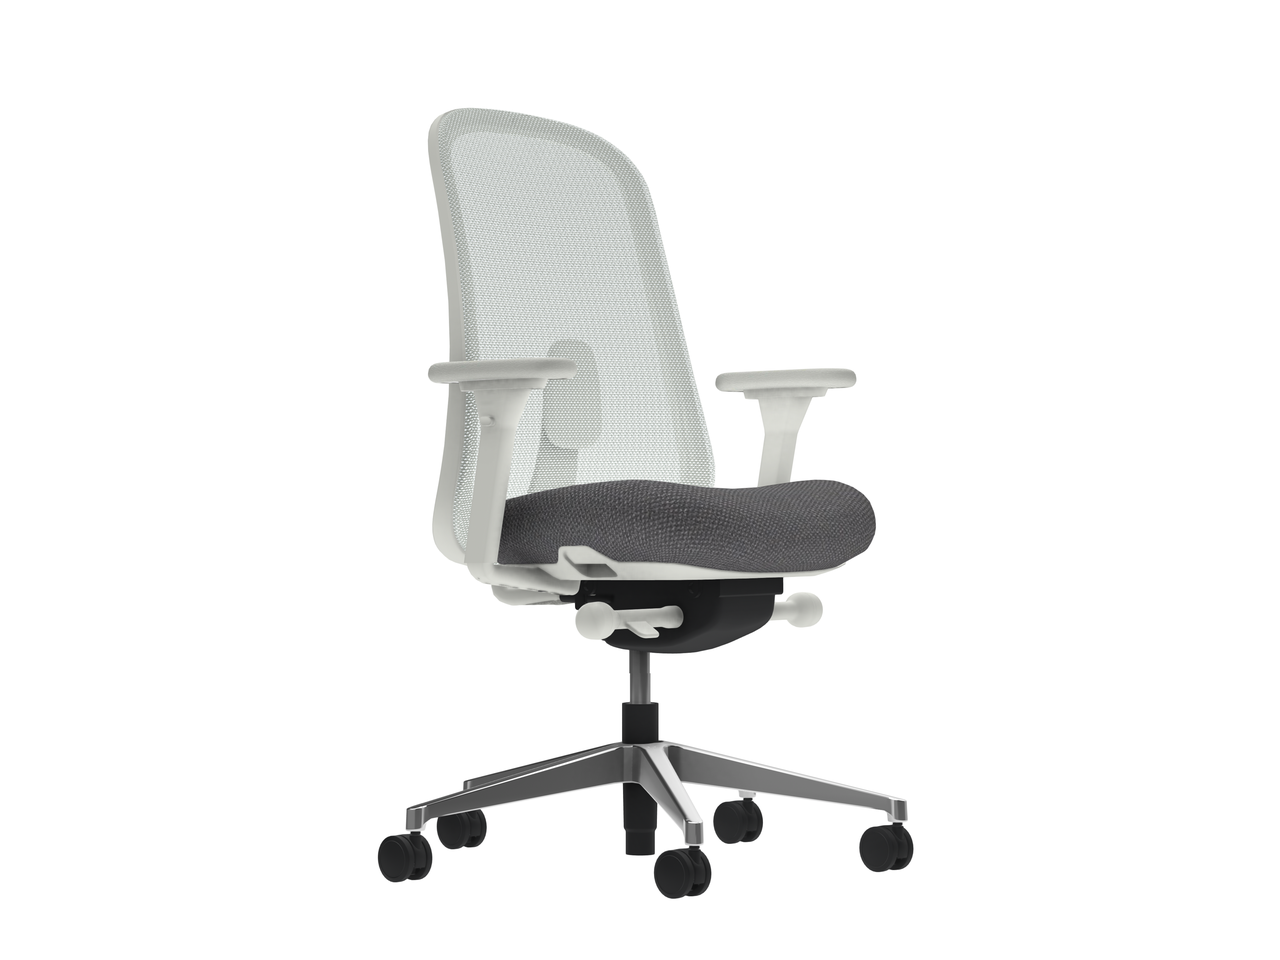 Ергономічне офісне крісло з профільованим сидінням Lino Mineral Frame and Base Phoenix Blizzard Сірий